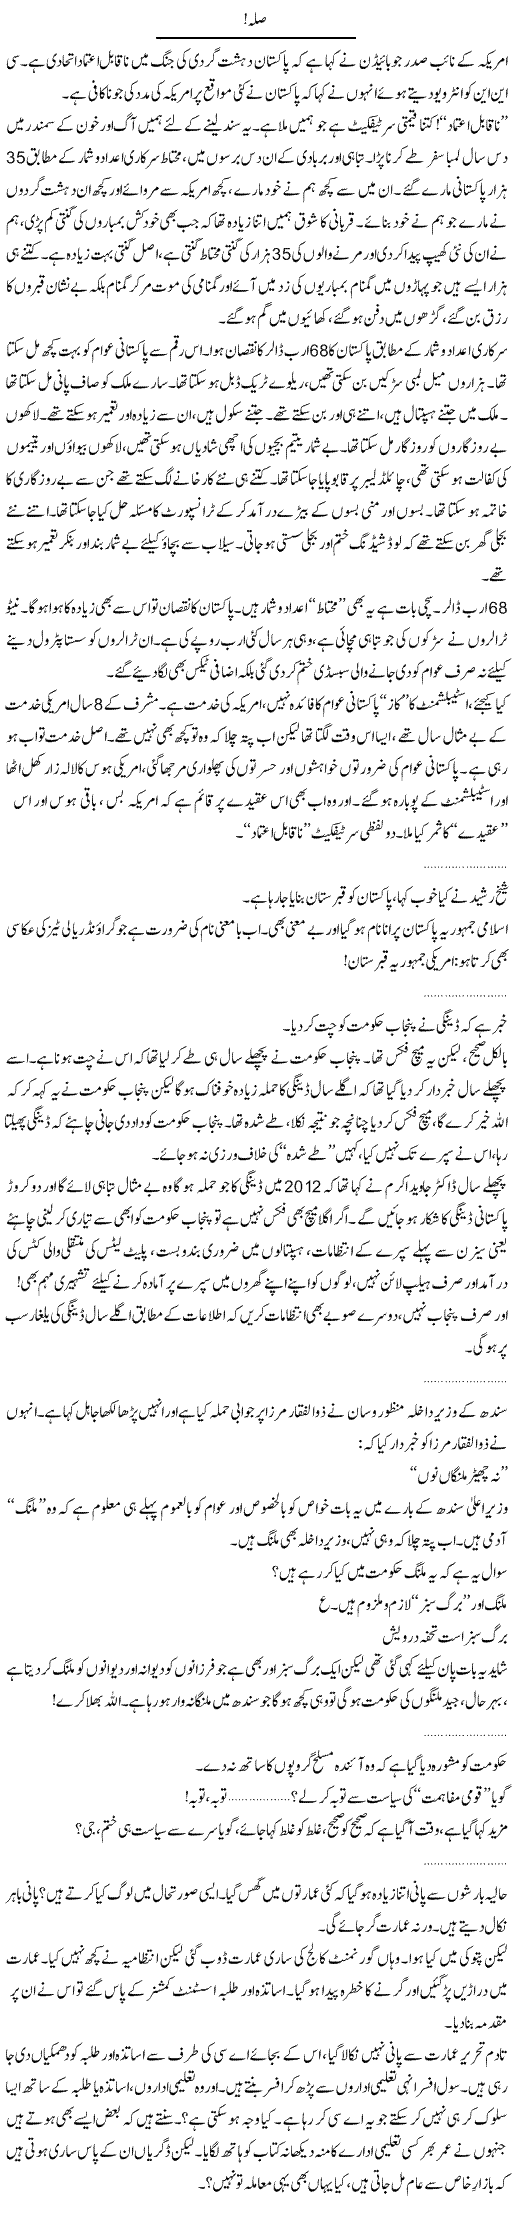 America and Pakistan Express Column Abdullah Tariq 15 September 2011